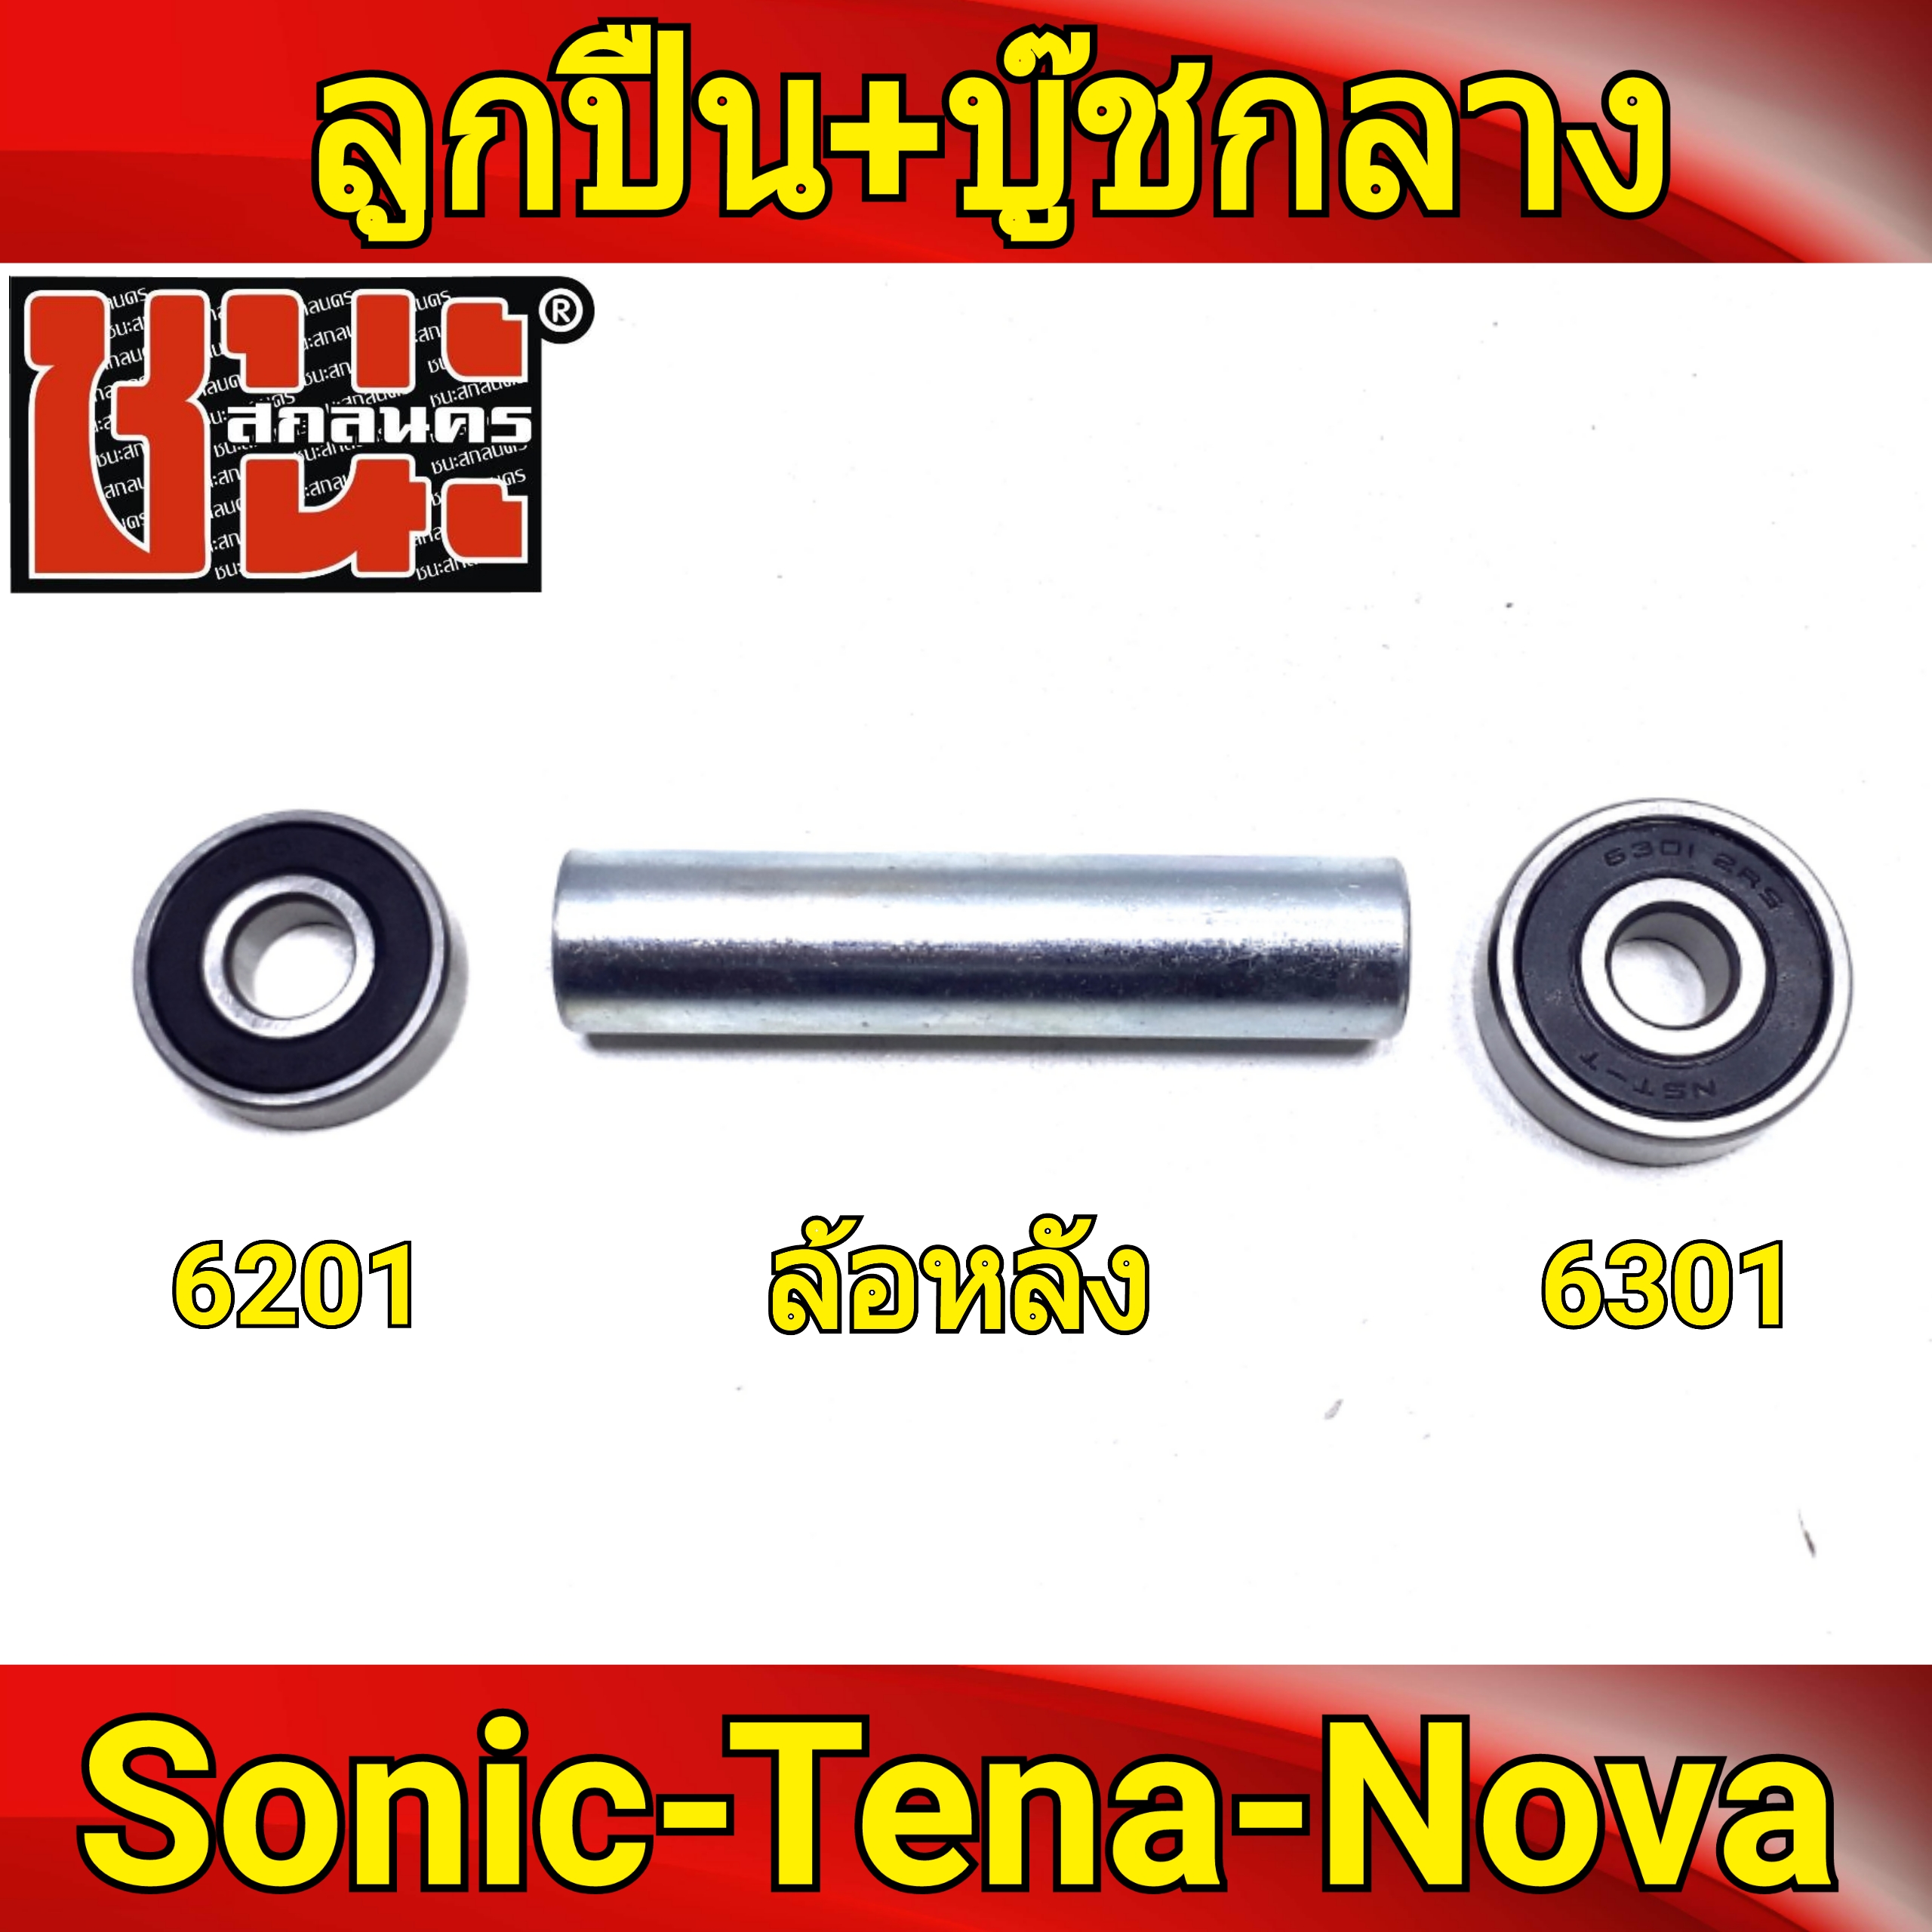 ชุดลูกปืน ล้อหลังดีส 2อัน + บุชกลาง โซนิค Sonic ทุกรุ่น , Nova โนวา , Tena เทน่า 6301*2+บุชหลังโซนิค